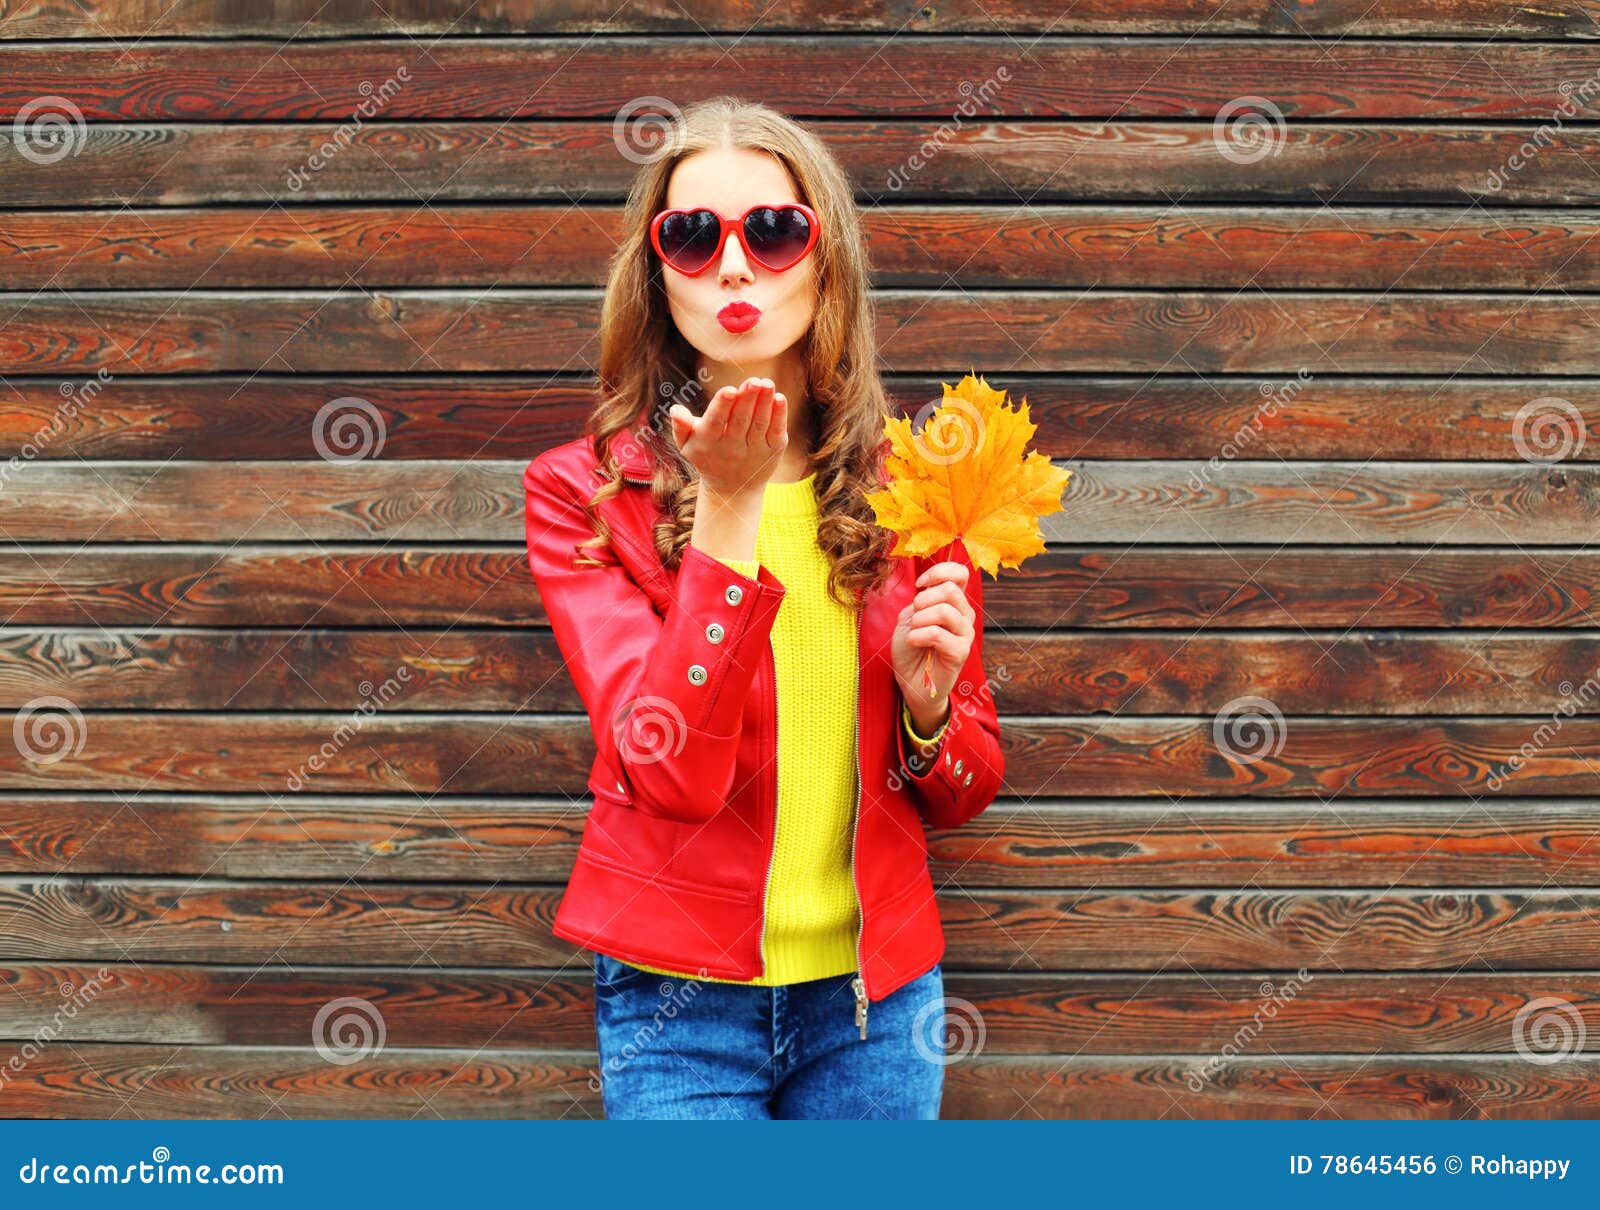 Junge Frau der Mode recht schickt Luft süßen Kuss mit gelben Ahornblättern am Herbsttag über dem hölzernen Hintergrund, der rotes. Junge Frau der Mode recht schickt Luft süßen Kuss mit gelben Ahornblättern am Herbsttag über dem hölzernen Hintergrund, der eine rote Lederjacke trägt